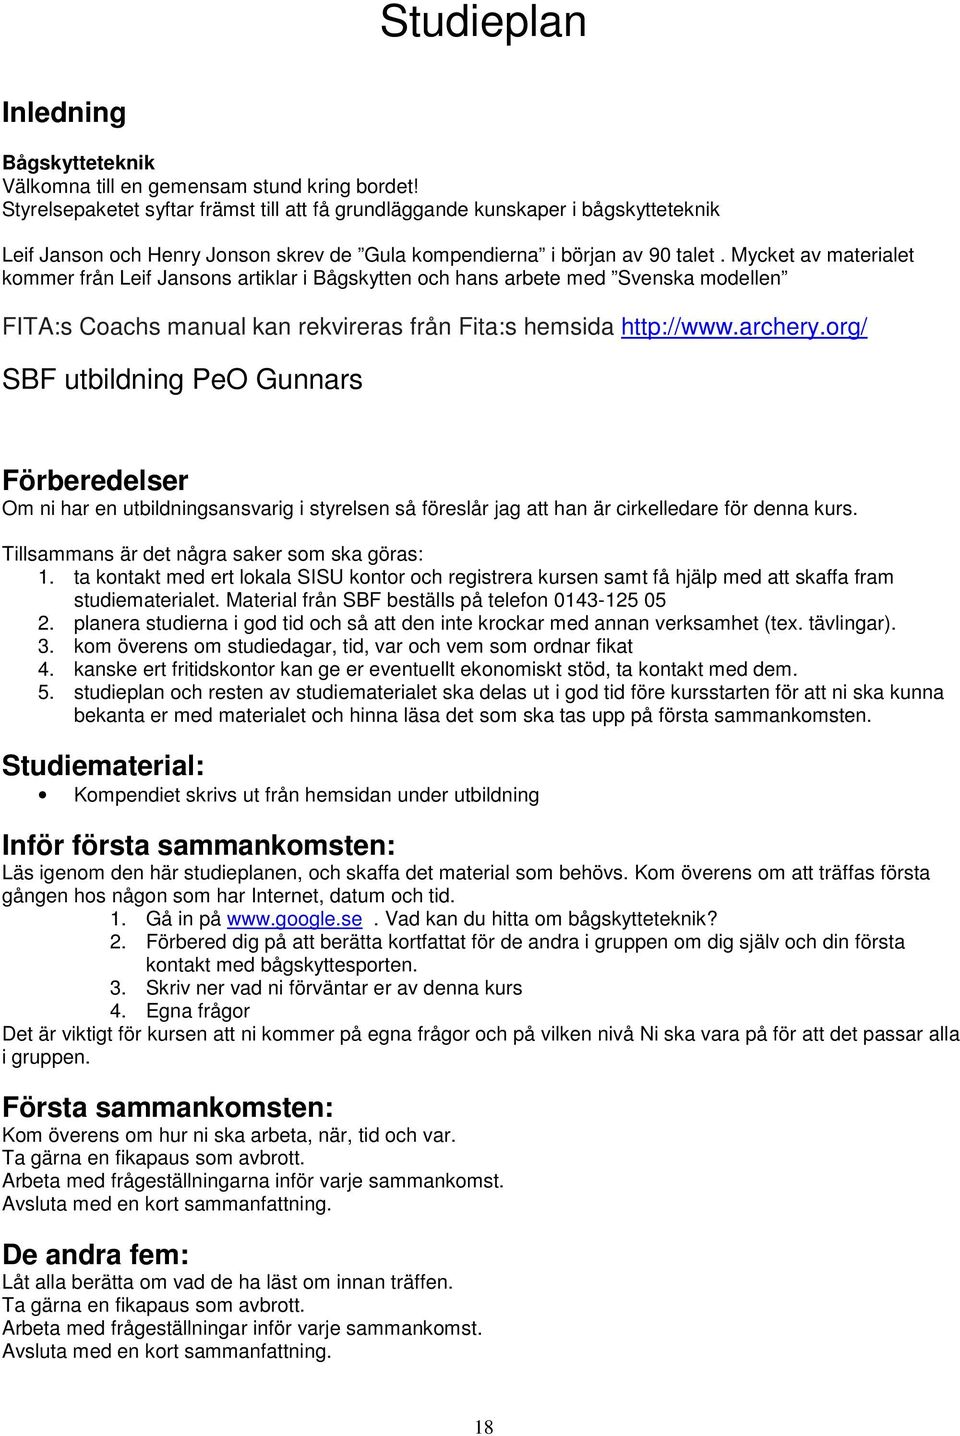 Mycket av materialet kommer från Leif Jansons artiklar i Bågskytten och hans arbete med Svenska modellen FITA:s Coachs manual kan rekvireras från Fita:s hemsida http://www.archery.